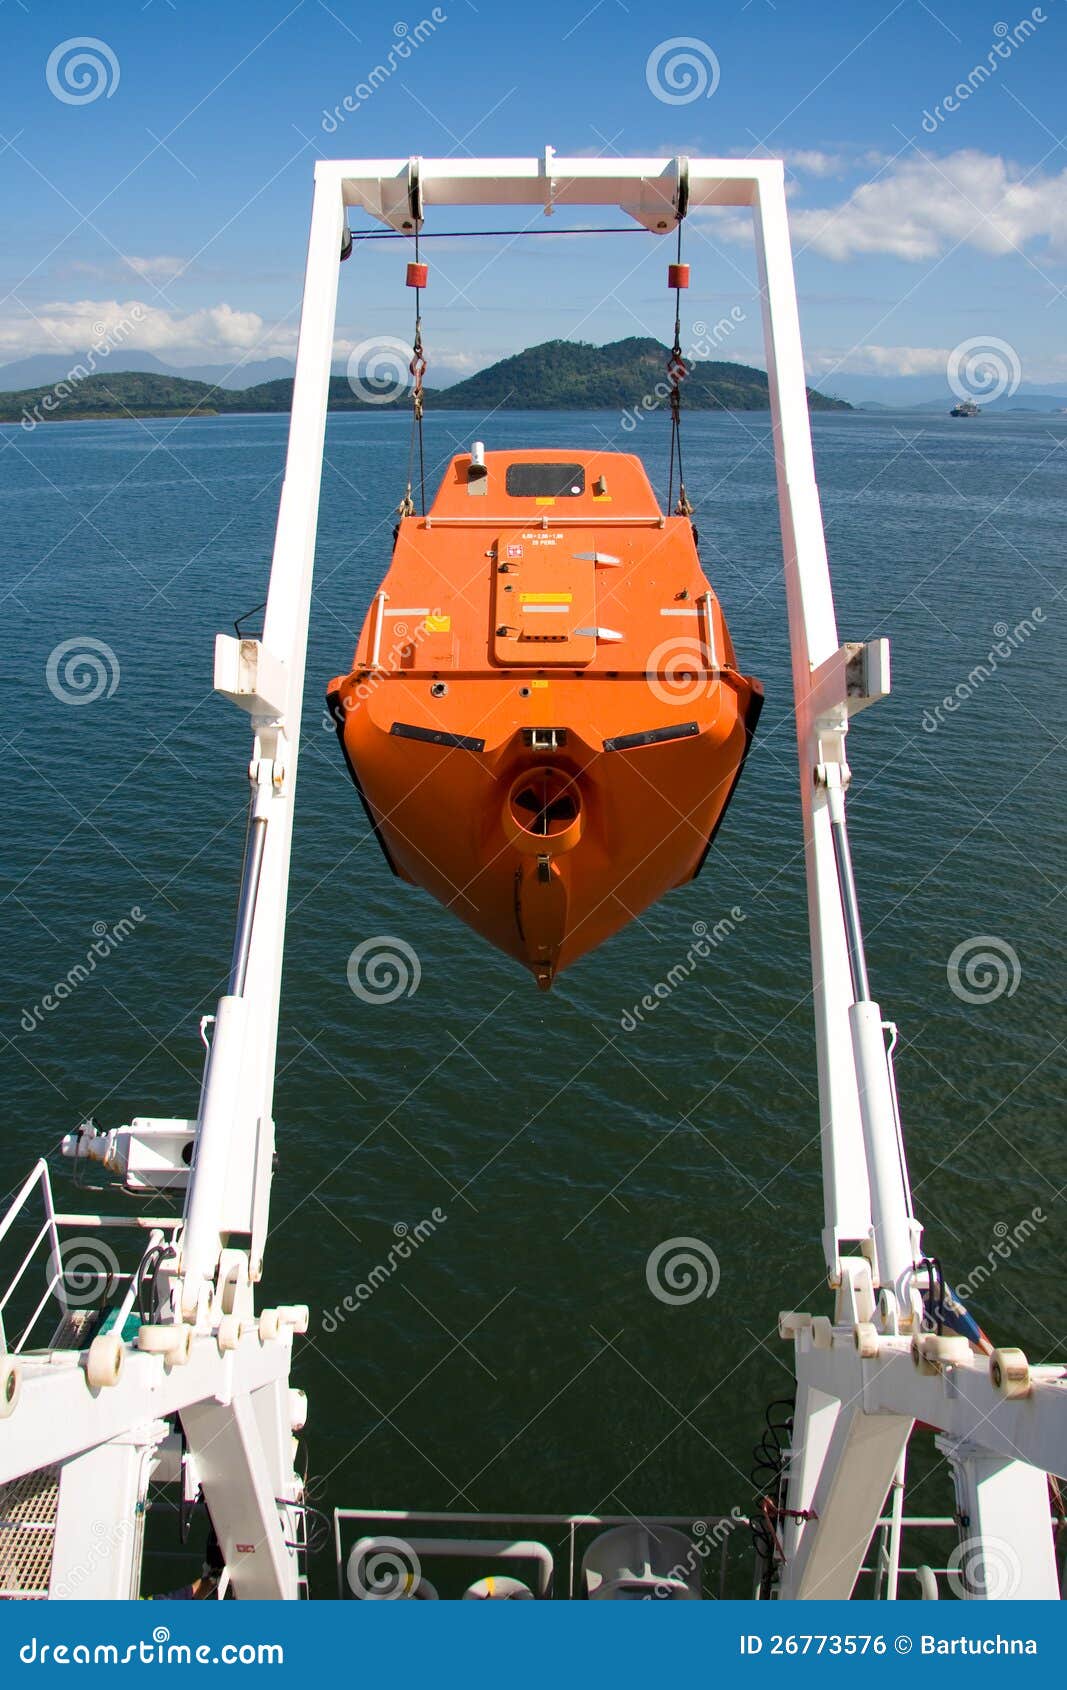 Free fall life boat stock photo. Image of life, orange 